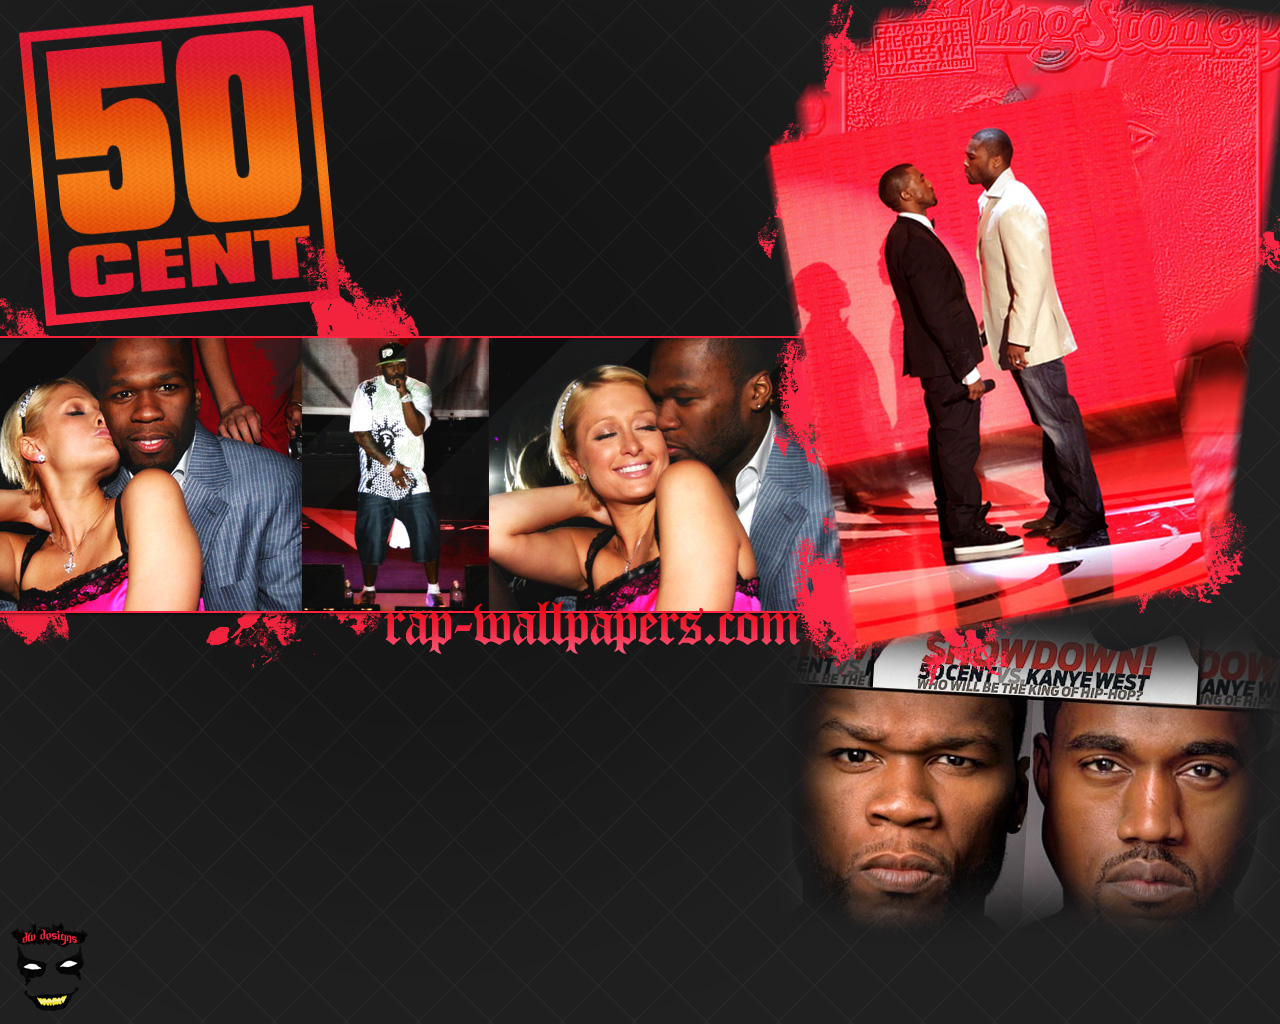 50 Cent vs Kanye West